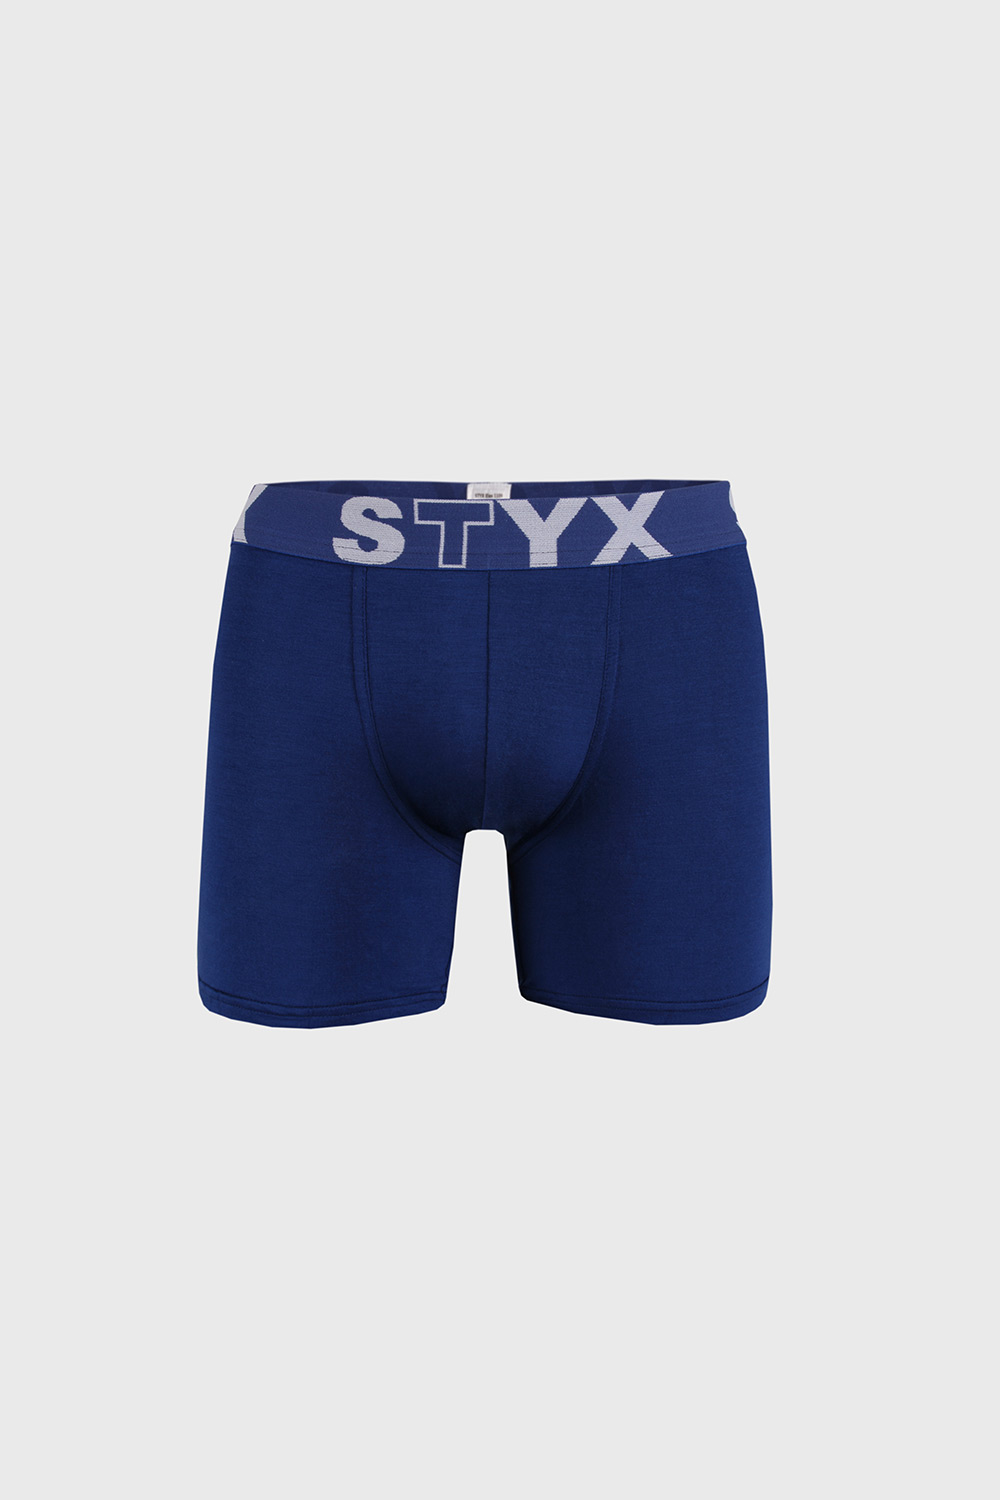 Tmavě modré boxerky STYX